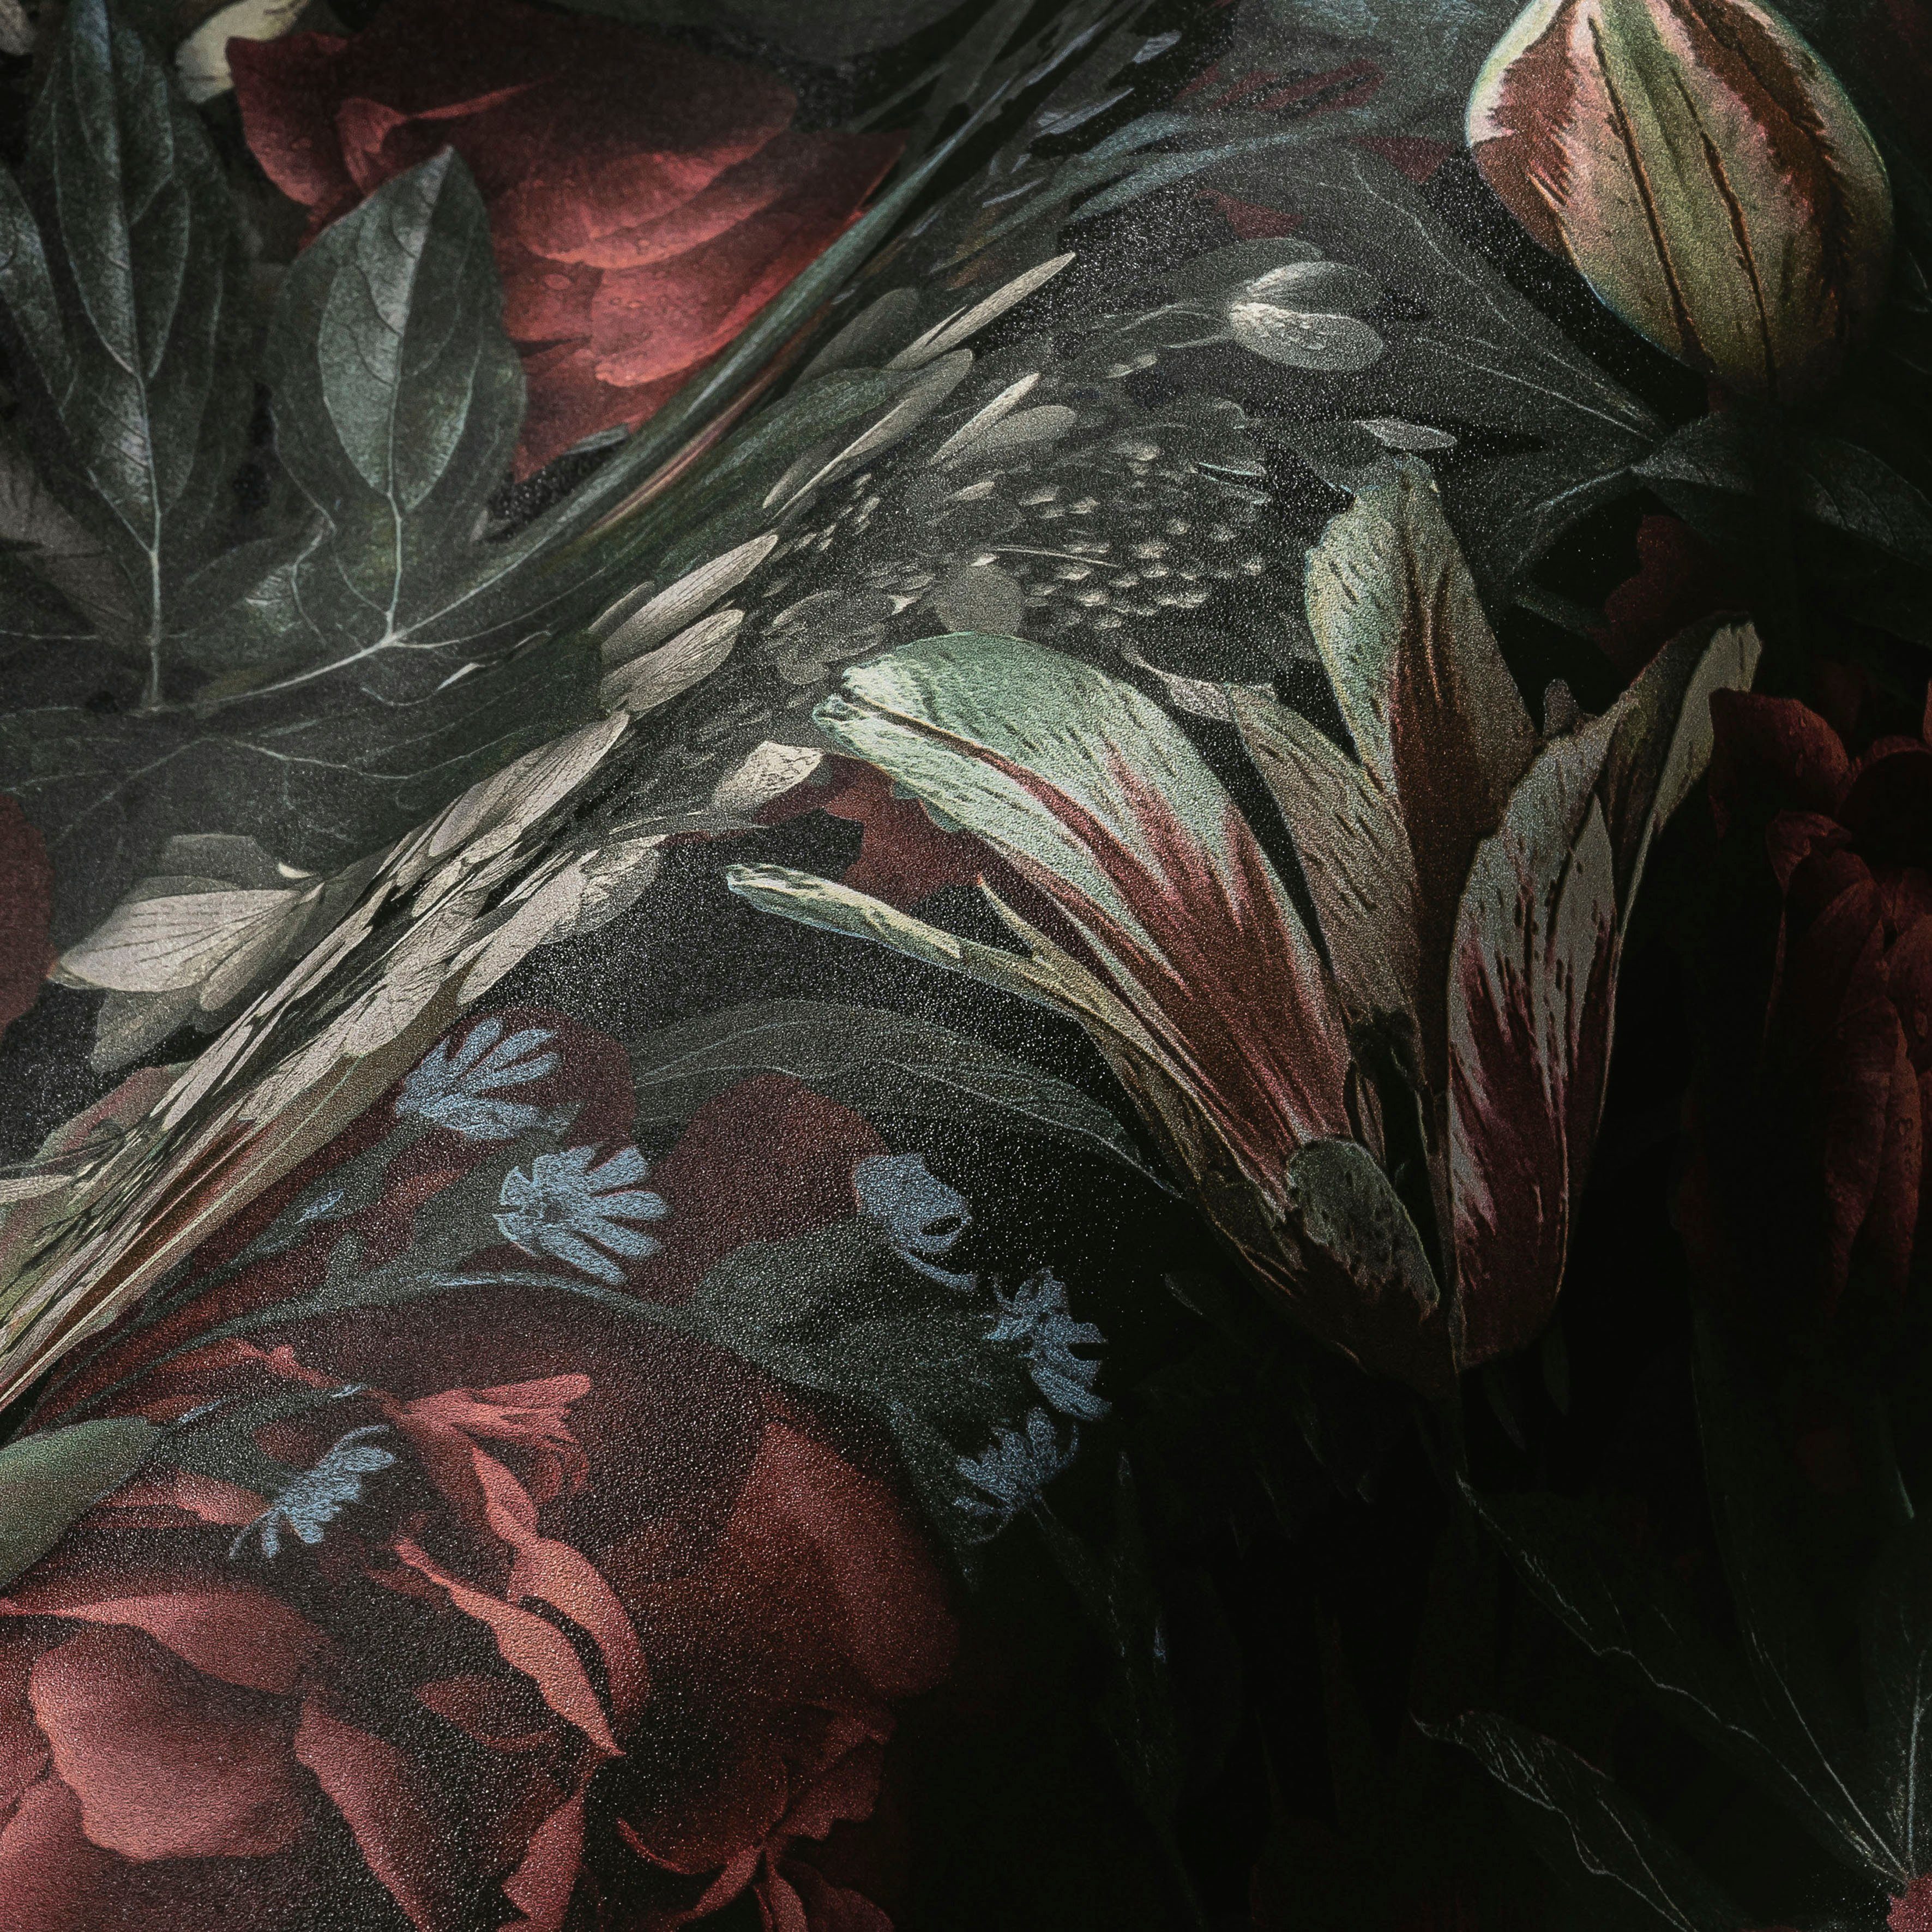 rot/grün Floral, Création matt, glatt, St), PintWalls Vliestapete Rosen A.S. Blumentapete (1